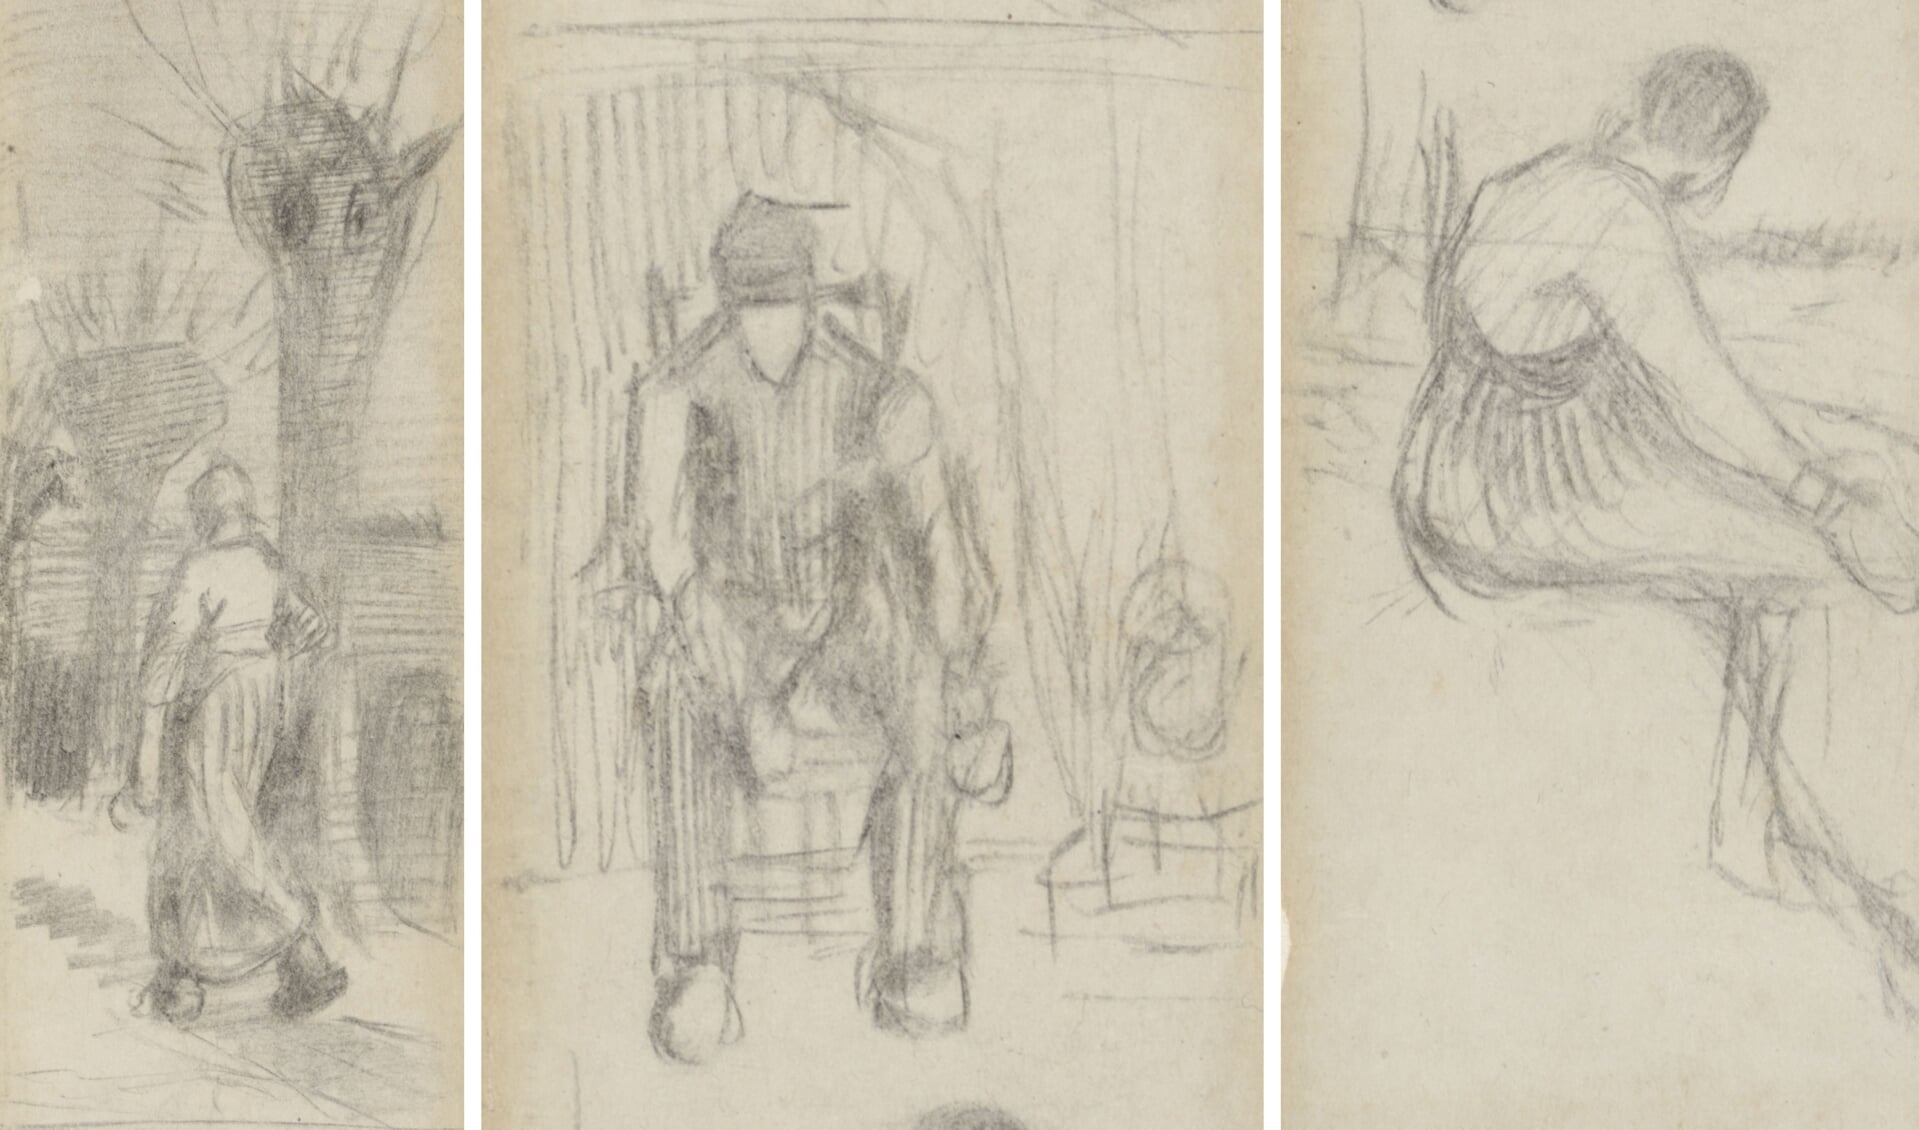 De drie tekeningen van Van Gogh op de boekenlegger.